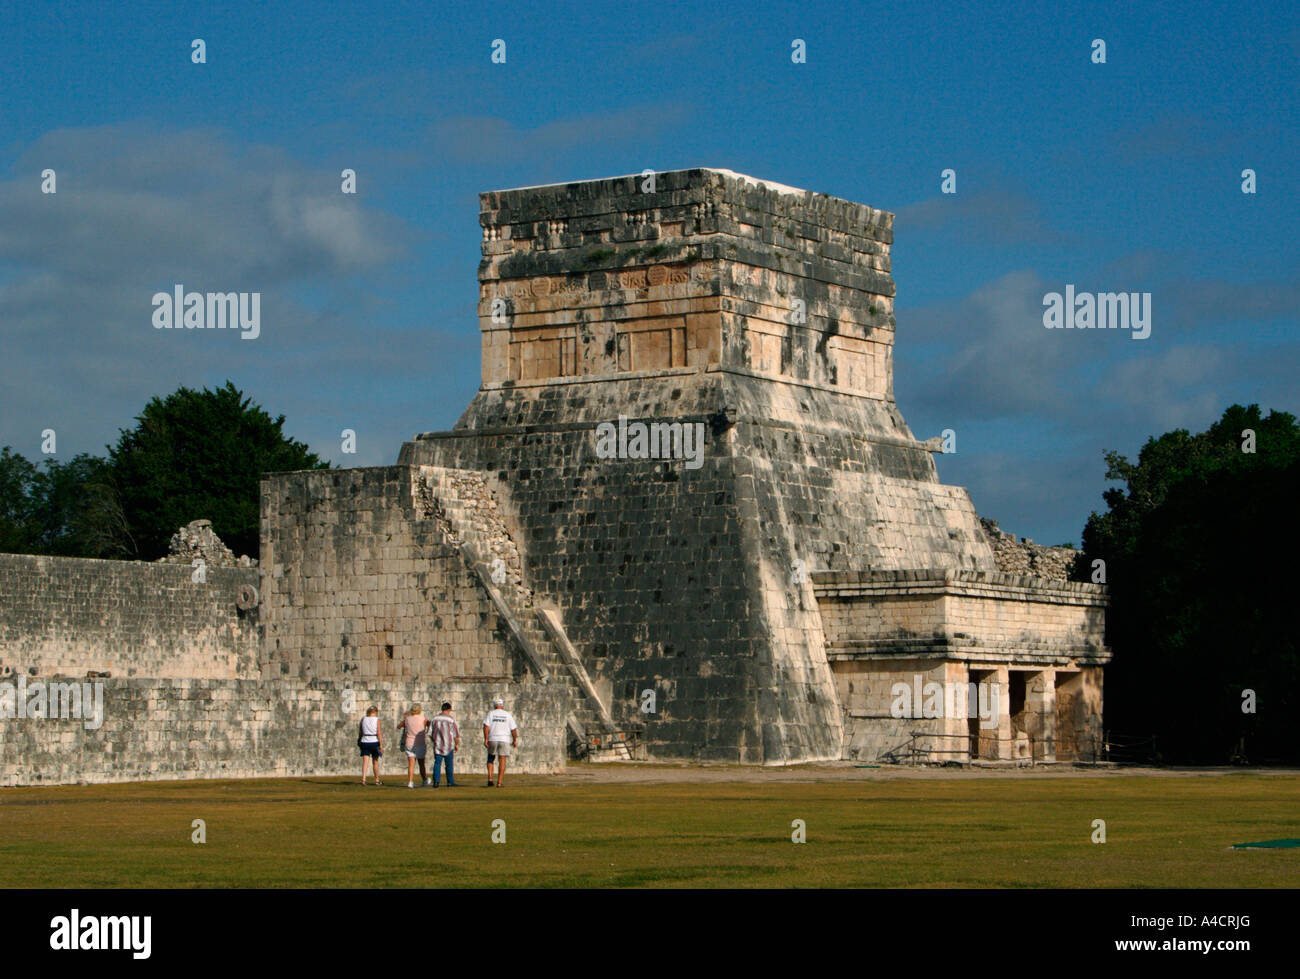 Der Ballspielplatz in Chichen Itza, eine Maya-Ruine Ausgrabungsstätte in North Central Yucatan ist der größte in Mittelamerika. Stockfoto